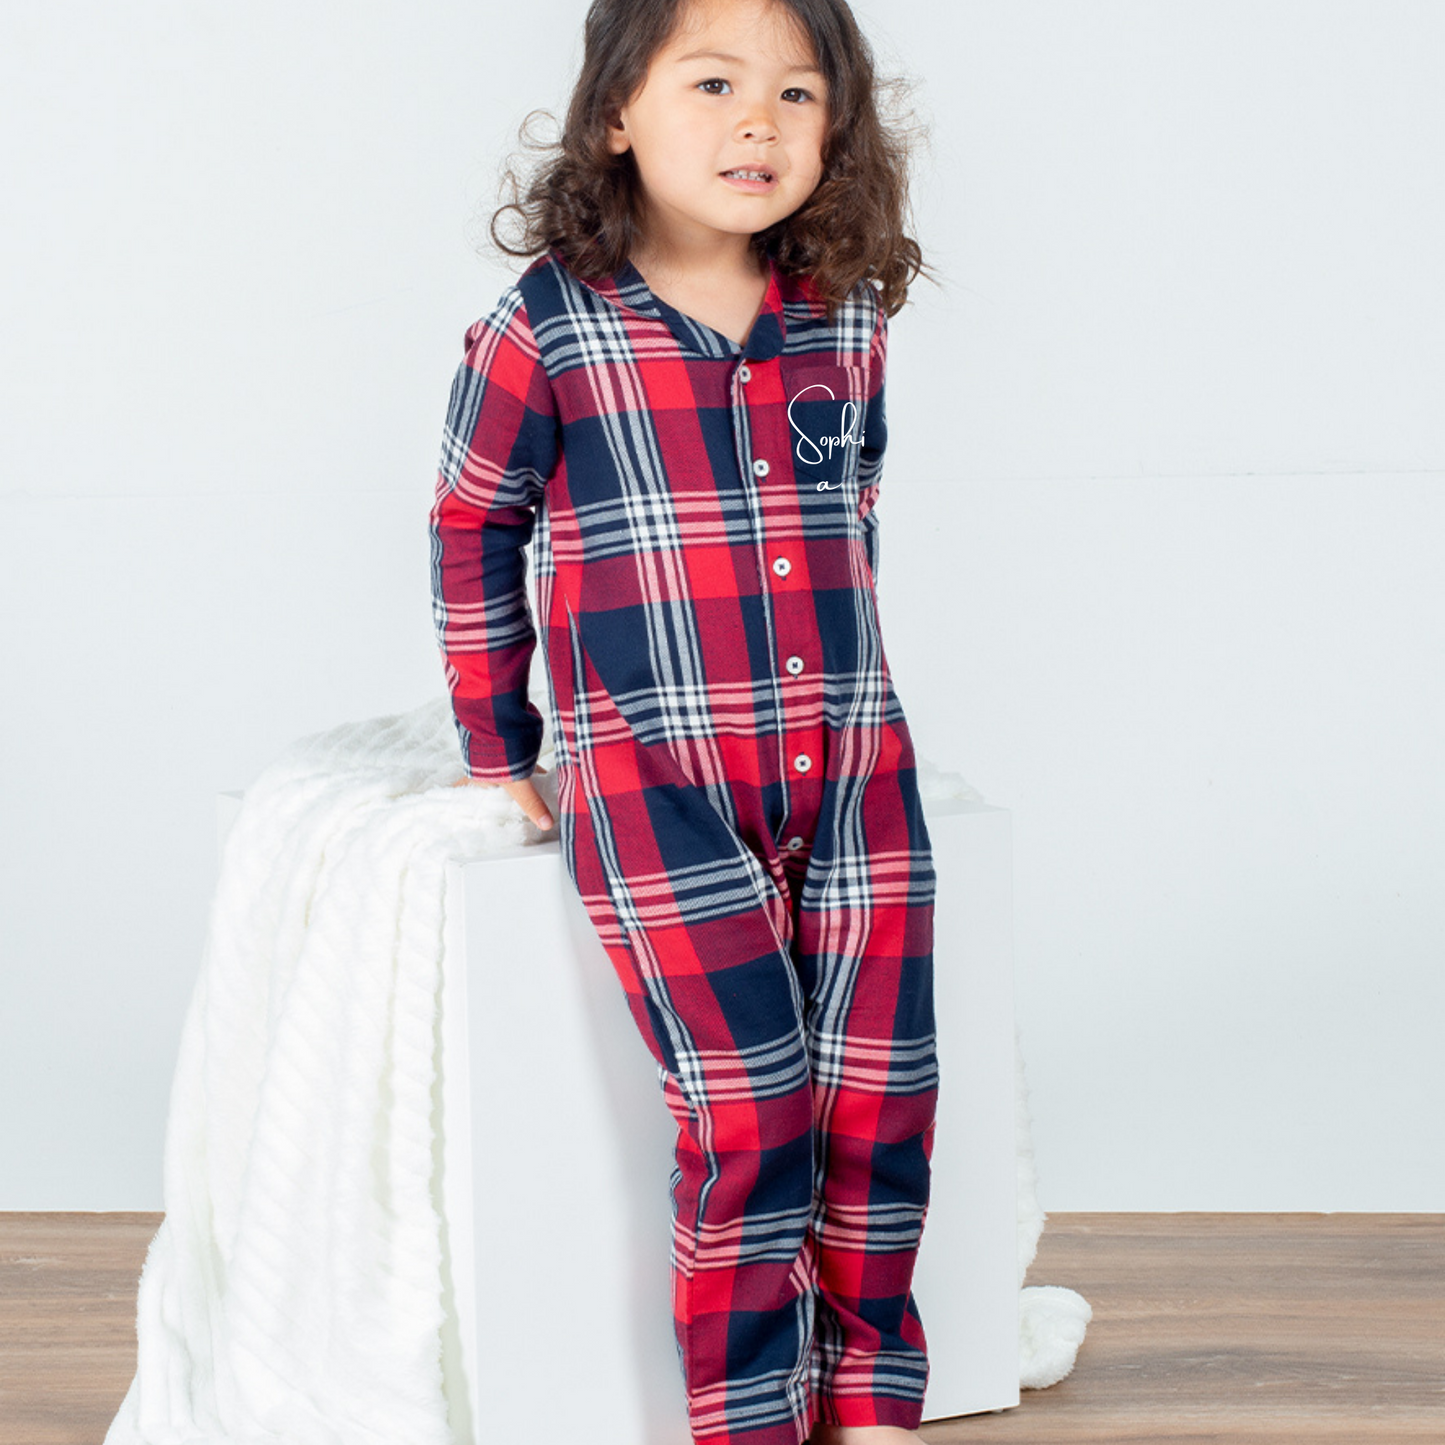 Personalised Tartan Christmas Pyjamas - Family Matching